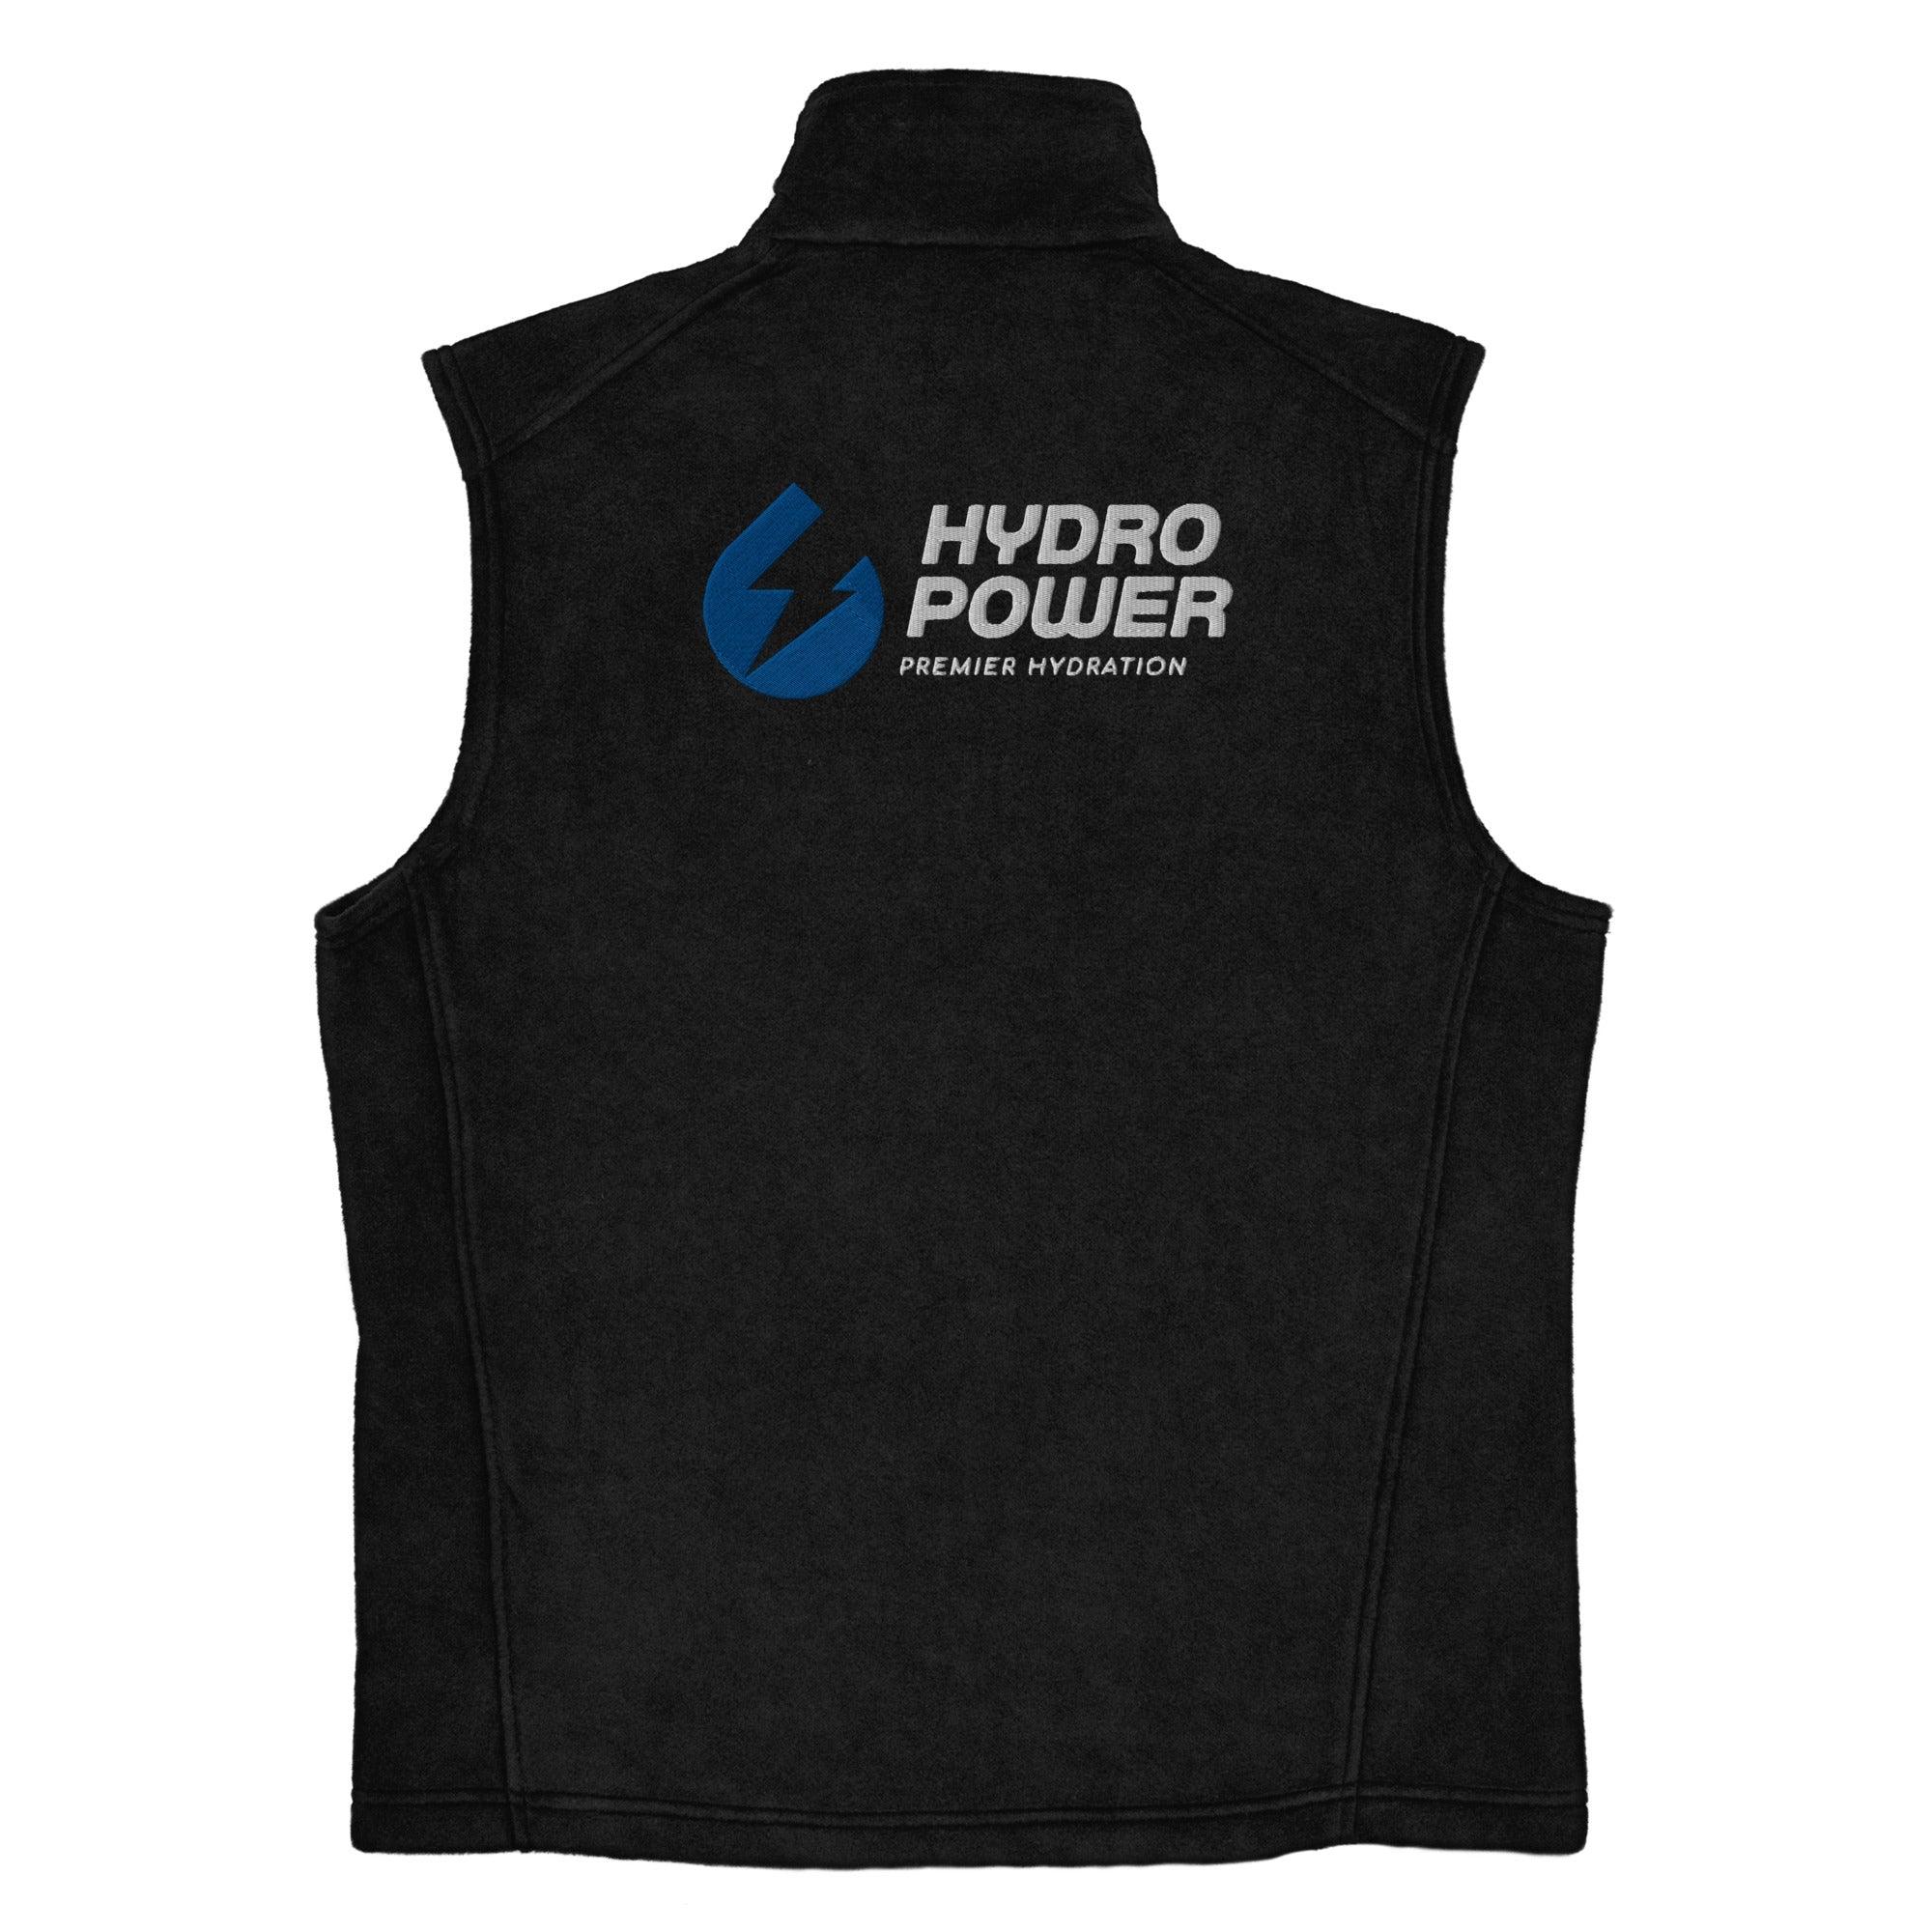 Men’s Columbia fleece vest Hydro Power